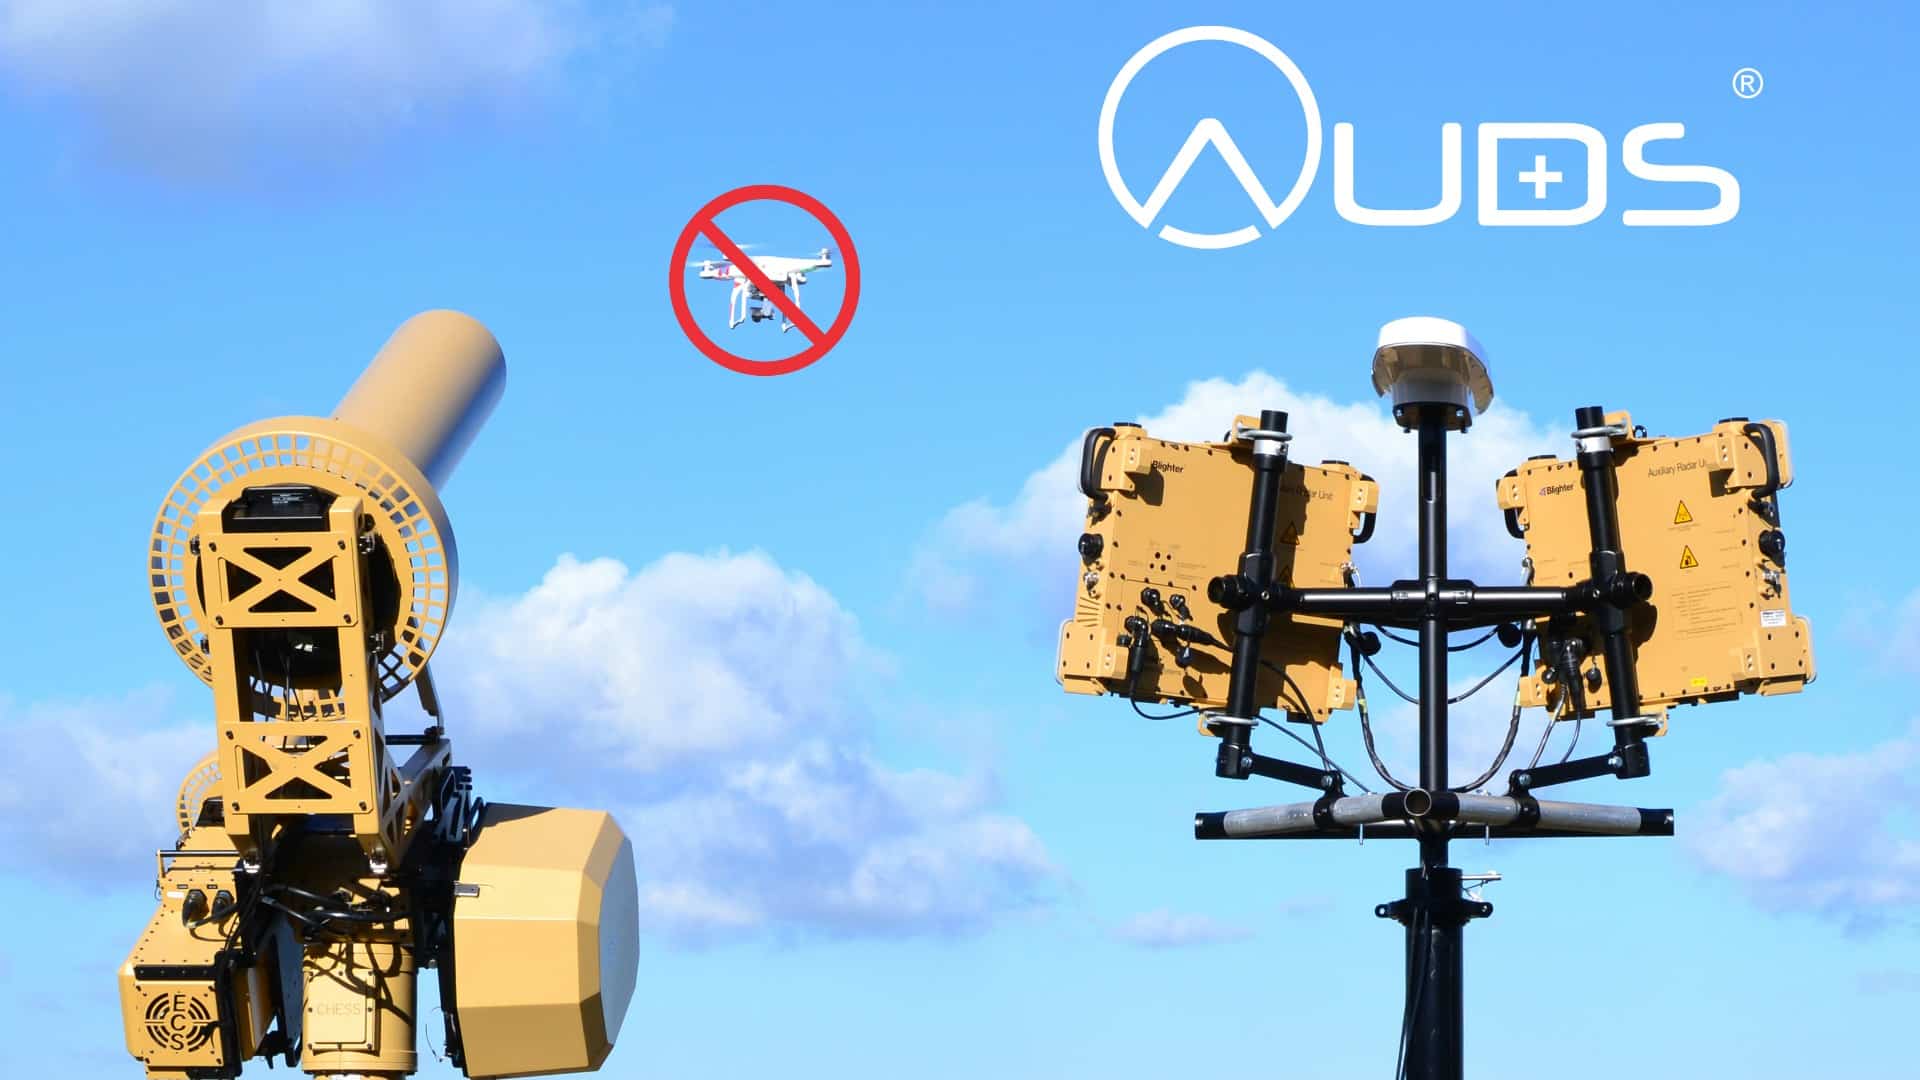 auds with drone الشعاع الحديدي: شركة إسرائيلية تعرض نظاماً مضاداً لطائرات الدرون في كوريا مجلة نقطة العلمية